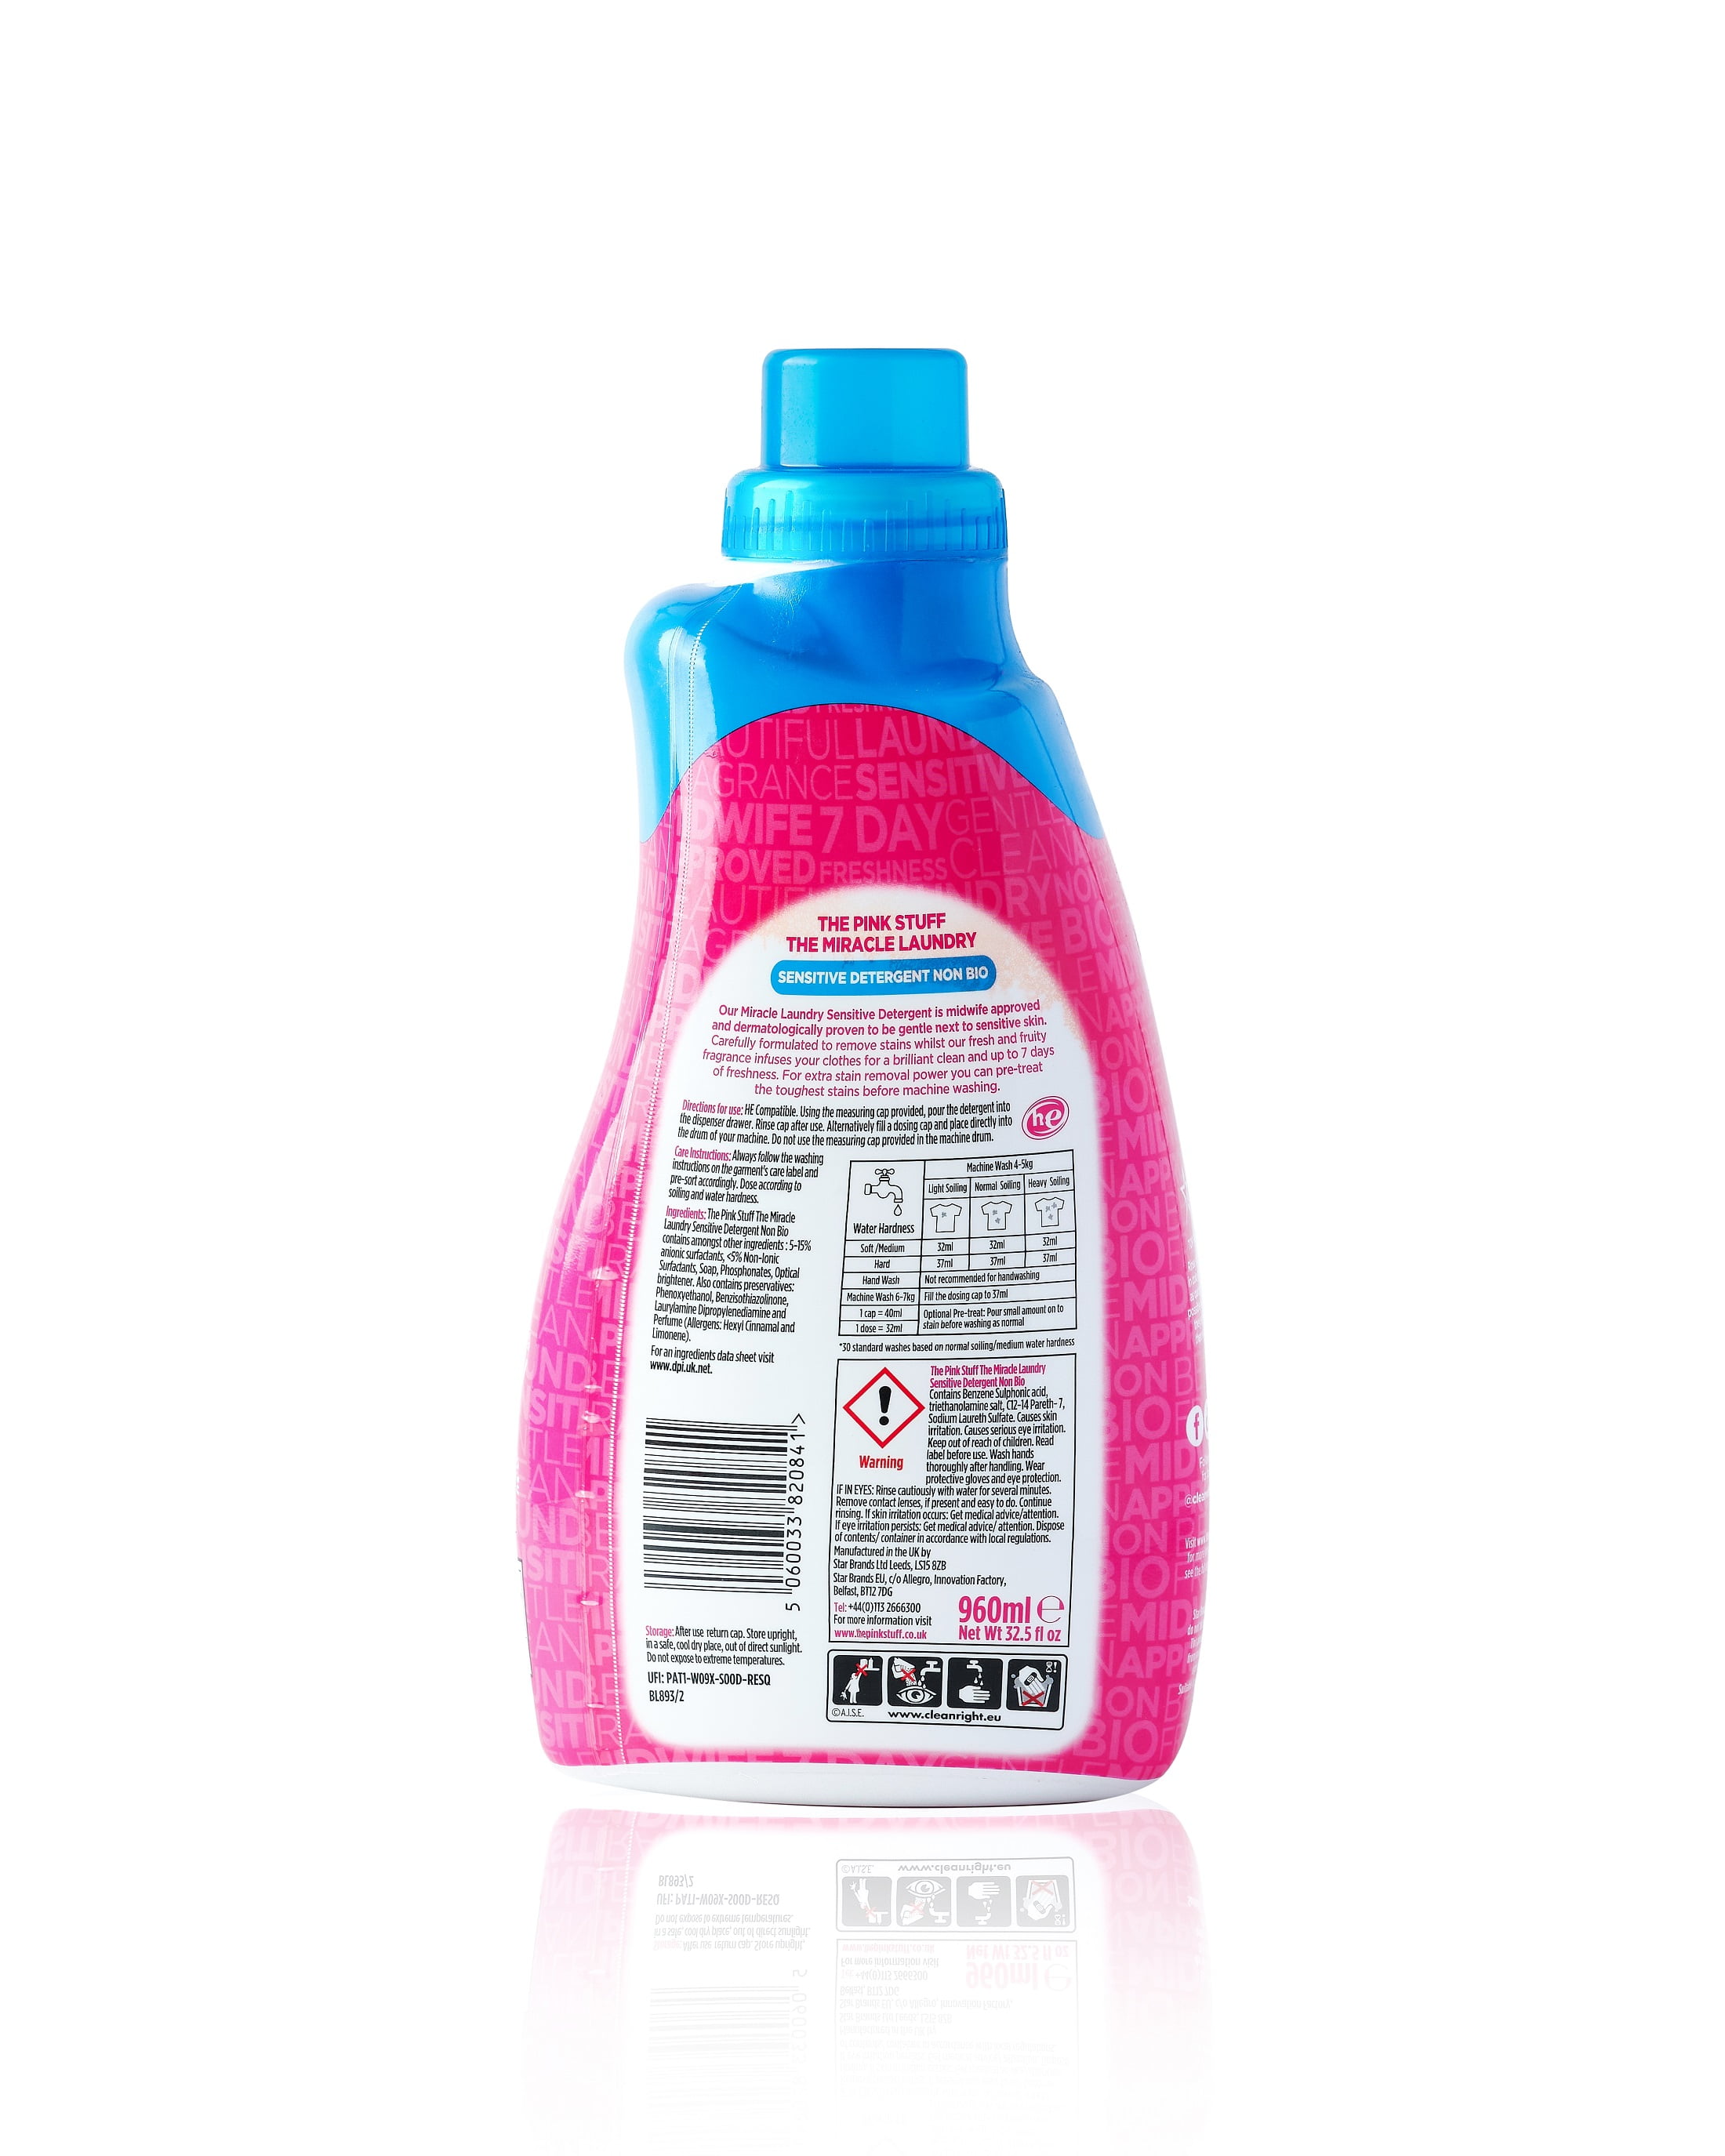 Sensitive Non Bio Liquid - The Pink Stuff